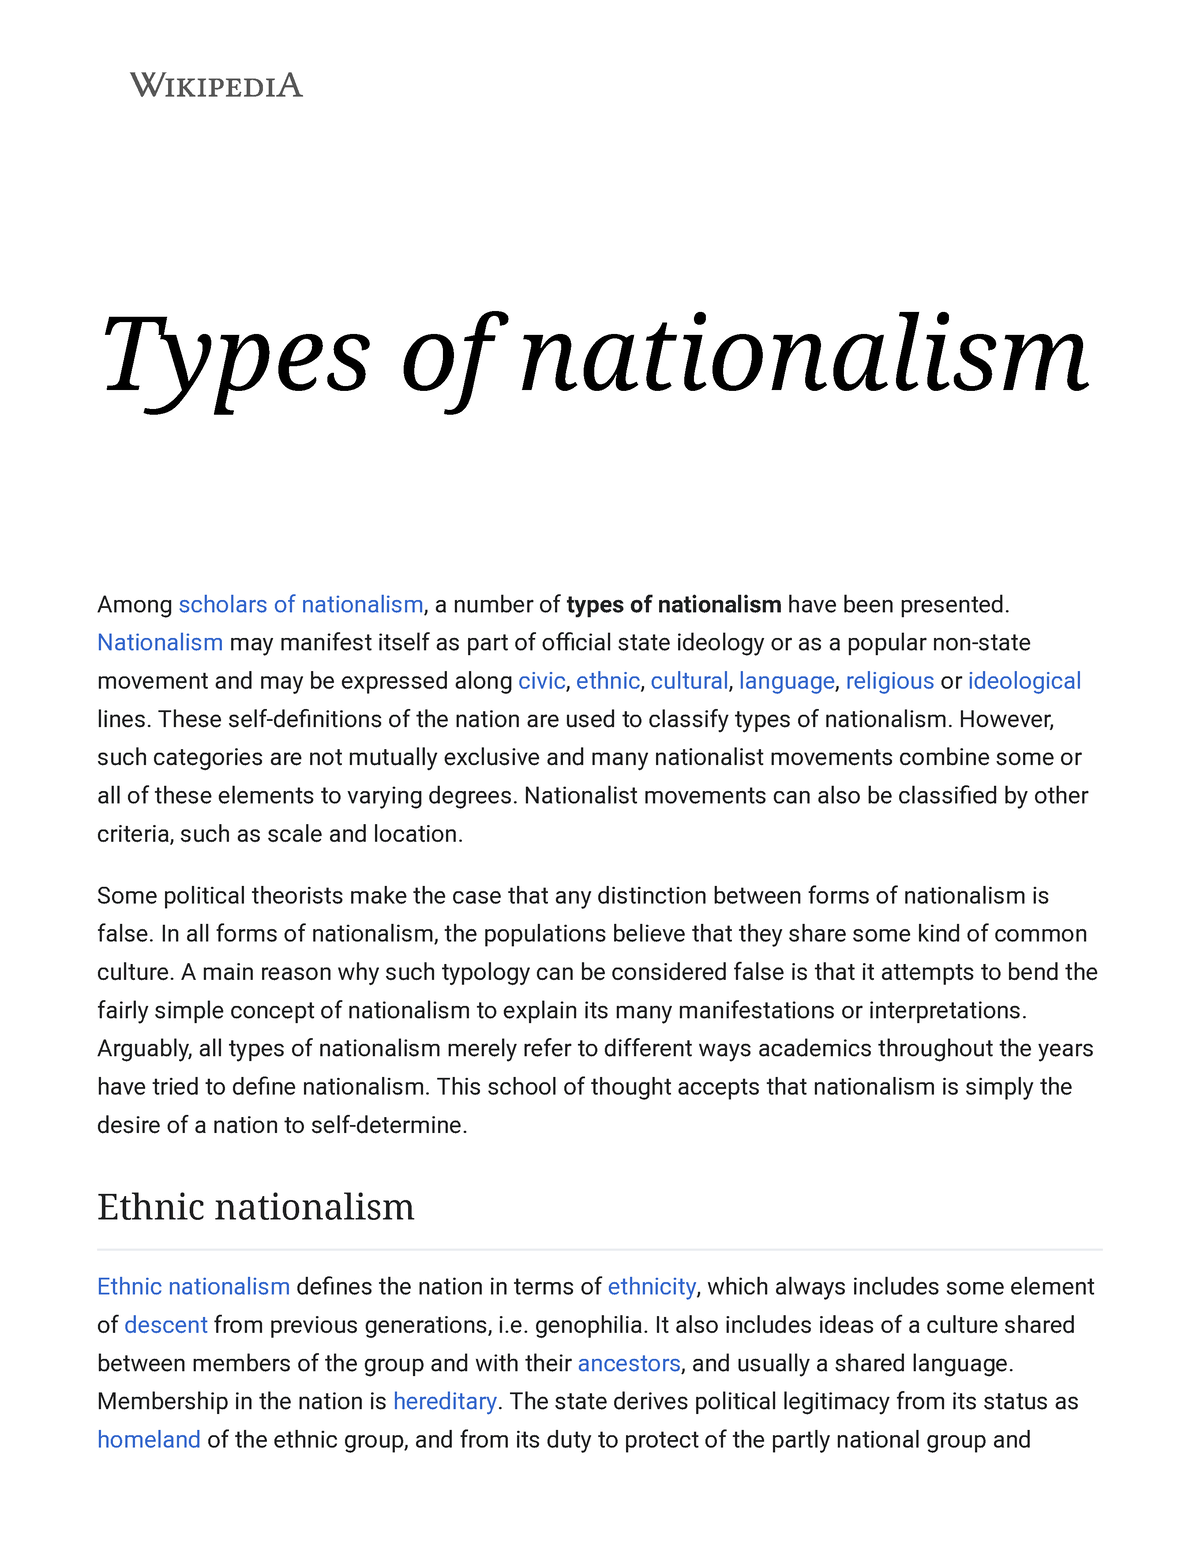 Nationalism - Wikipedia